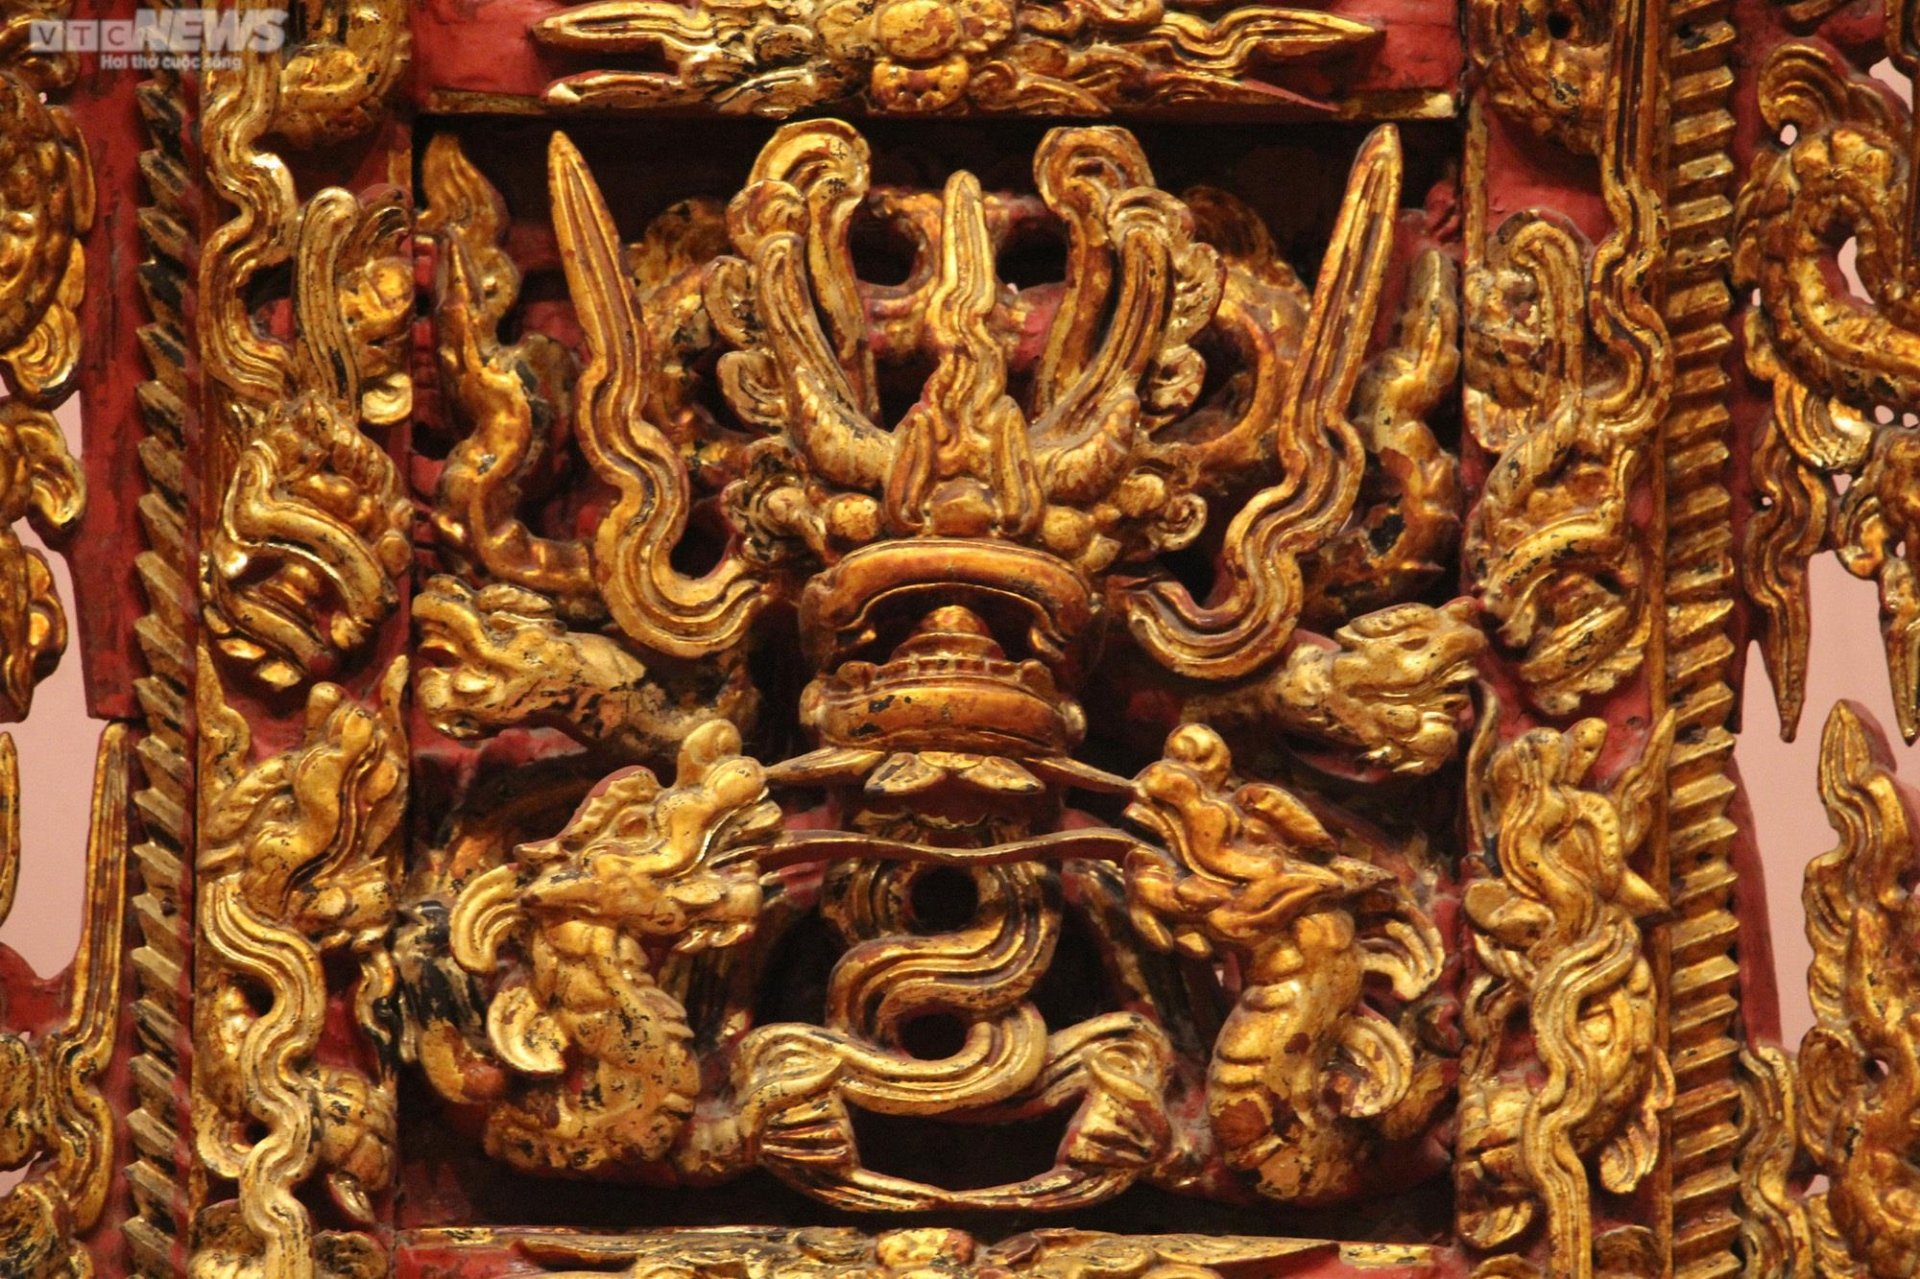 Chiêm ngưỡng ngai thờ độc nhất vô nhị hơn 300 năm tuổi ở Thái Bình - 11